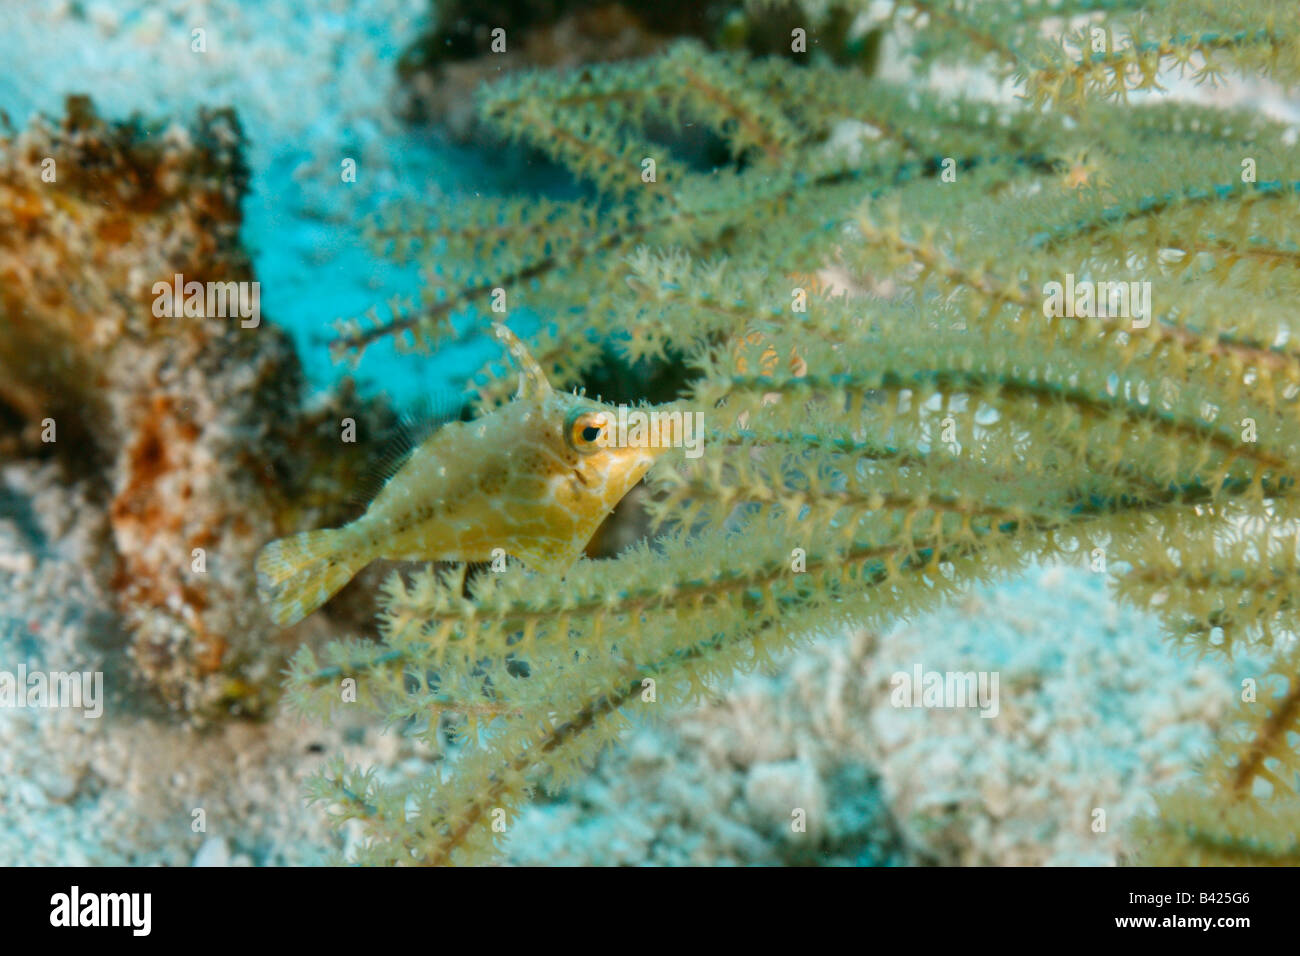 Un diminuto slender filefish escondido entre las ramas, camuflado para que coincida con el color del coral de fuego con lomo foredorsal extended Foto de stock